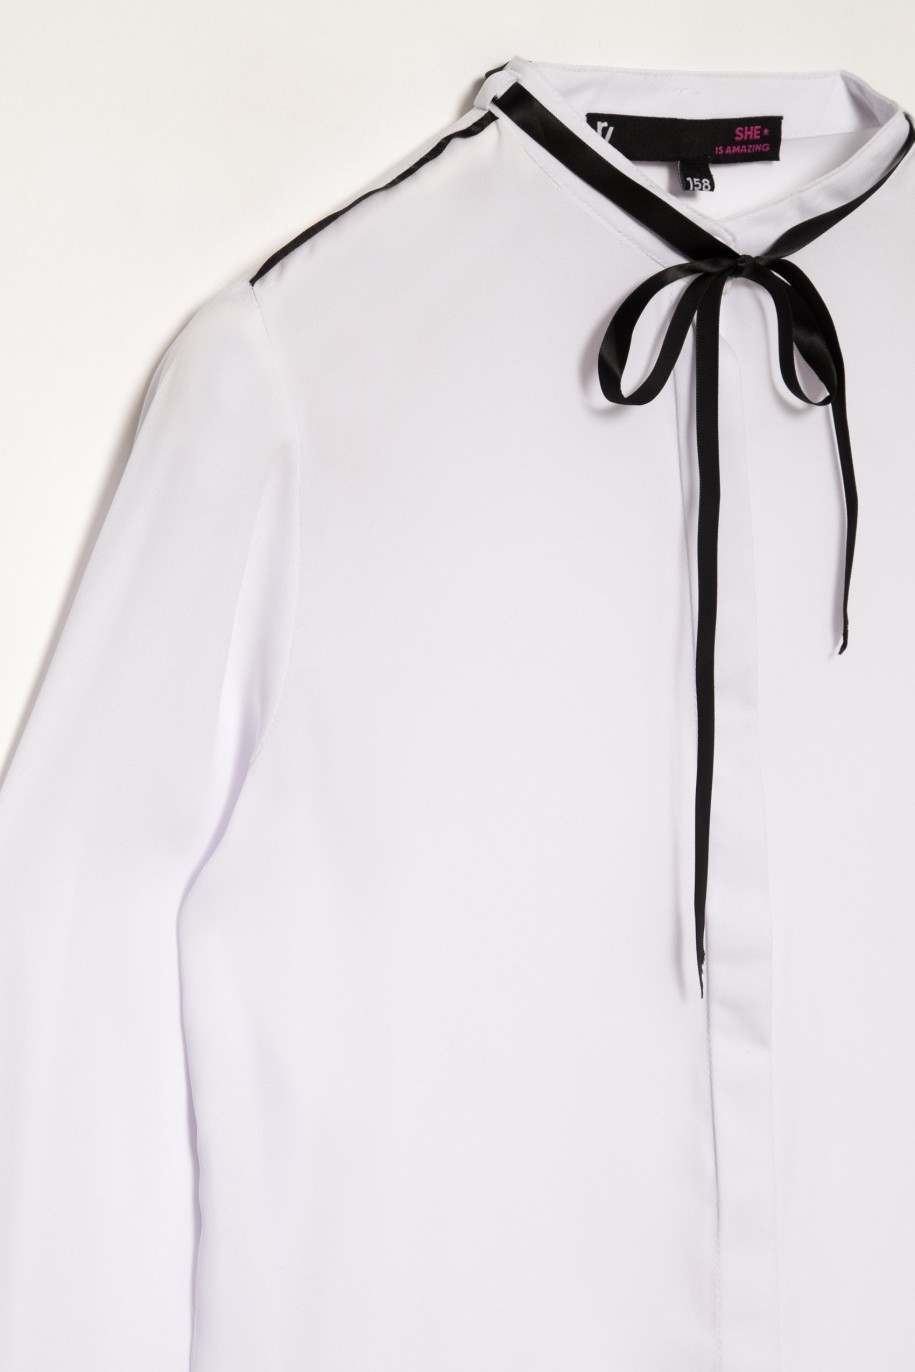 Biała elegancka koszula z czarnymi taśmami dla dziewczyny - 27419